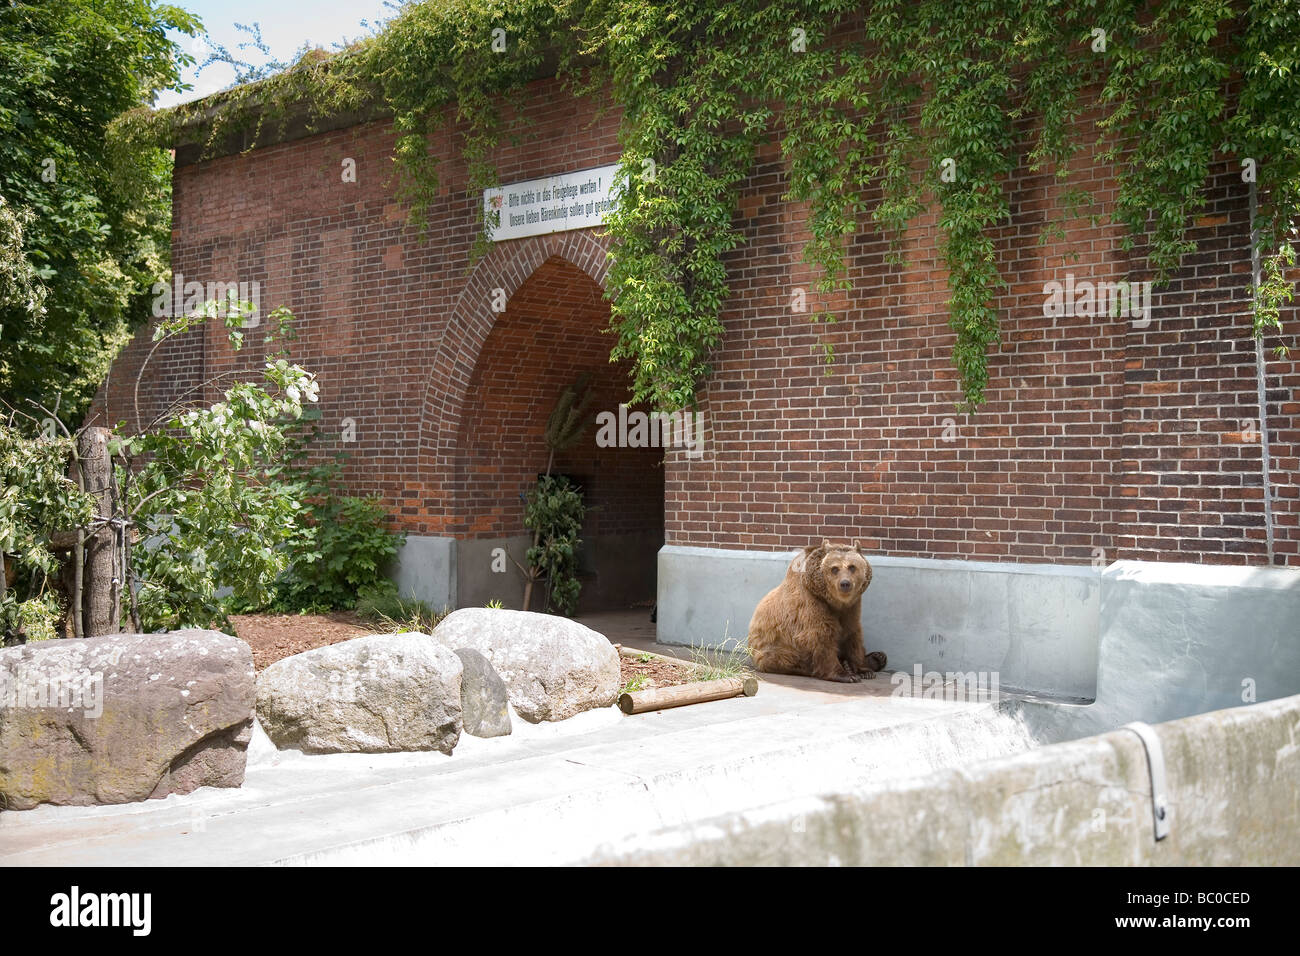 Bear Pit, Köllnischer Park, Berlin, Germany Stock Photo